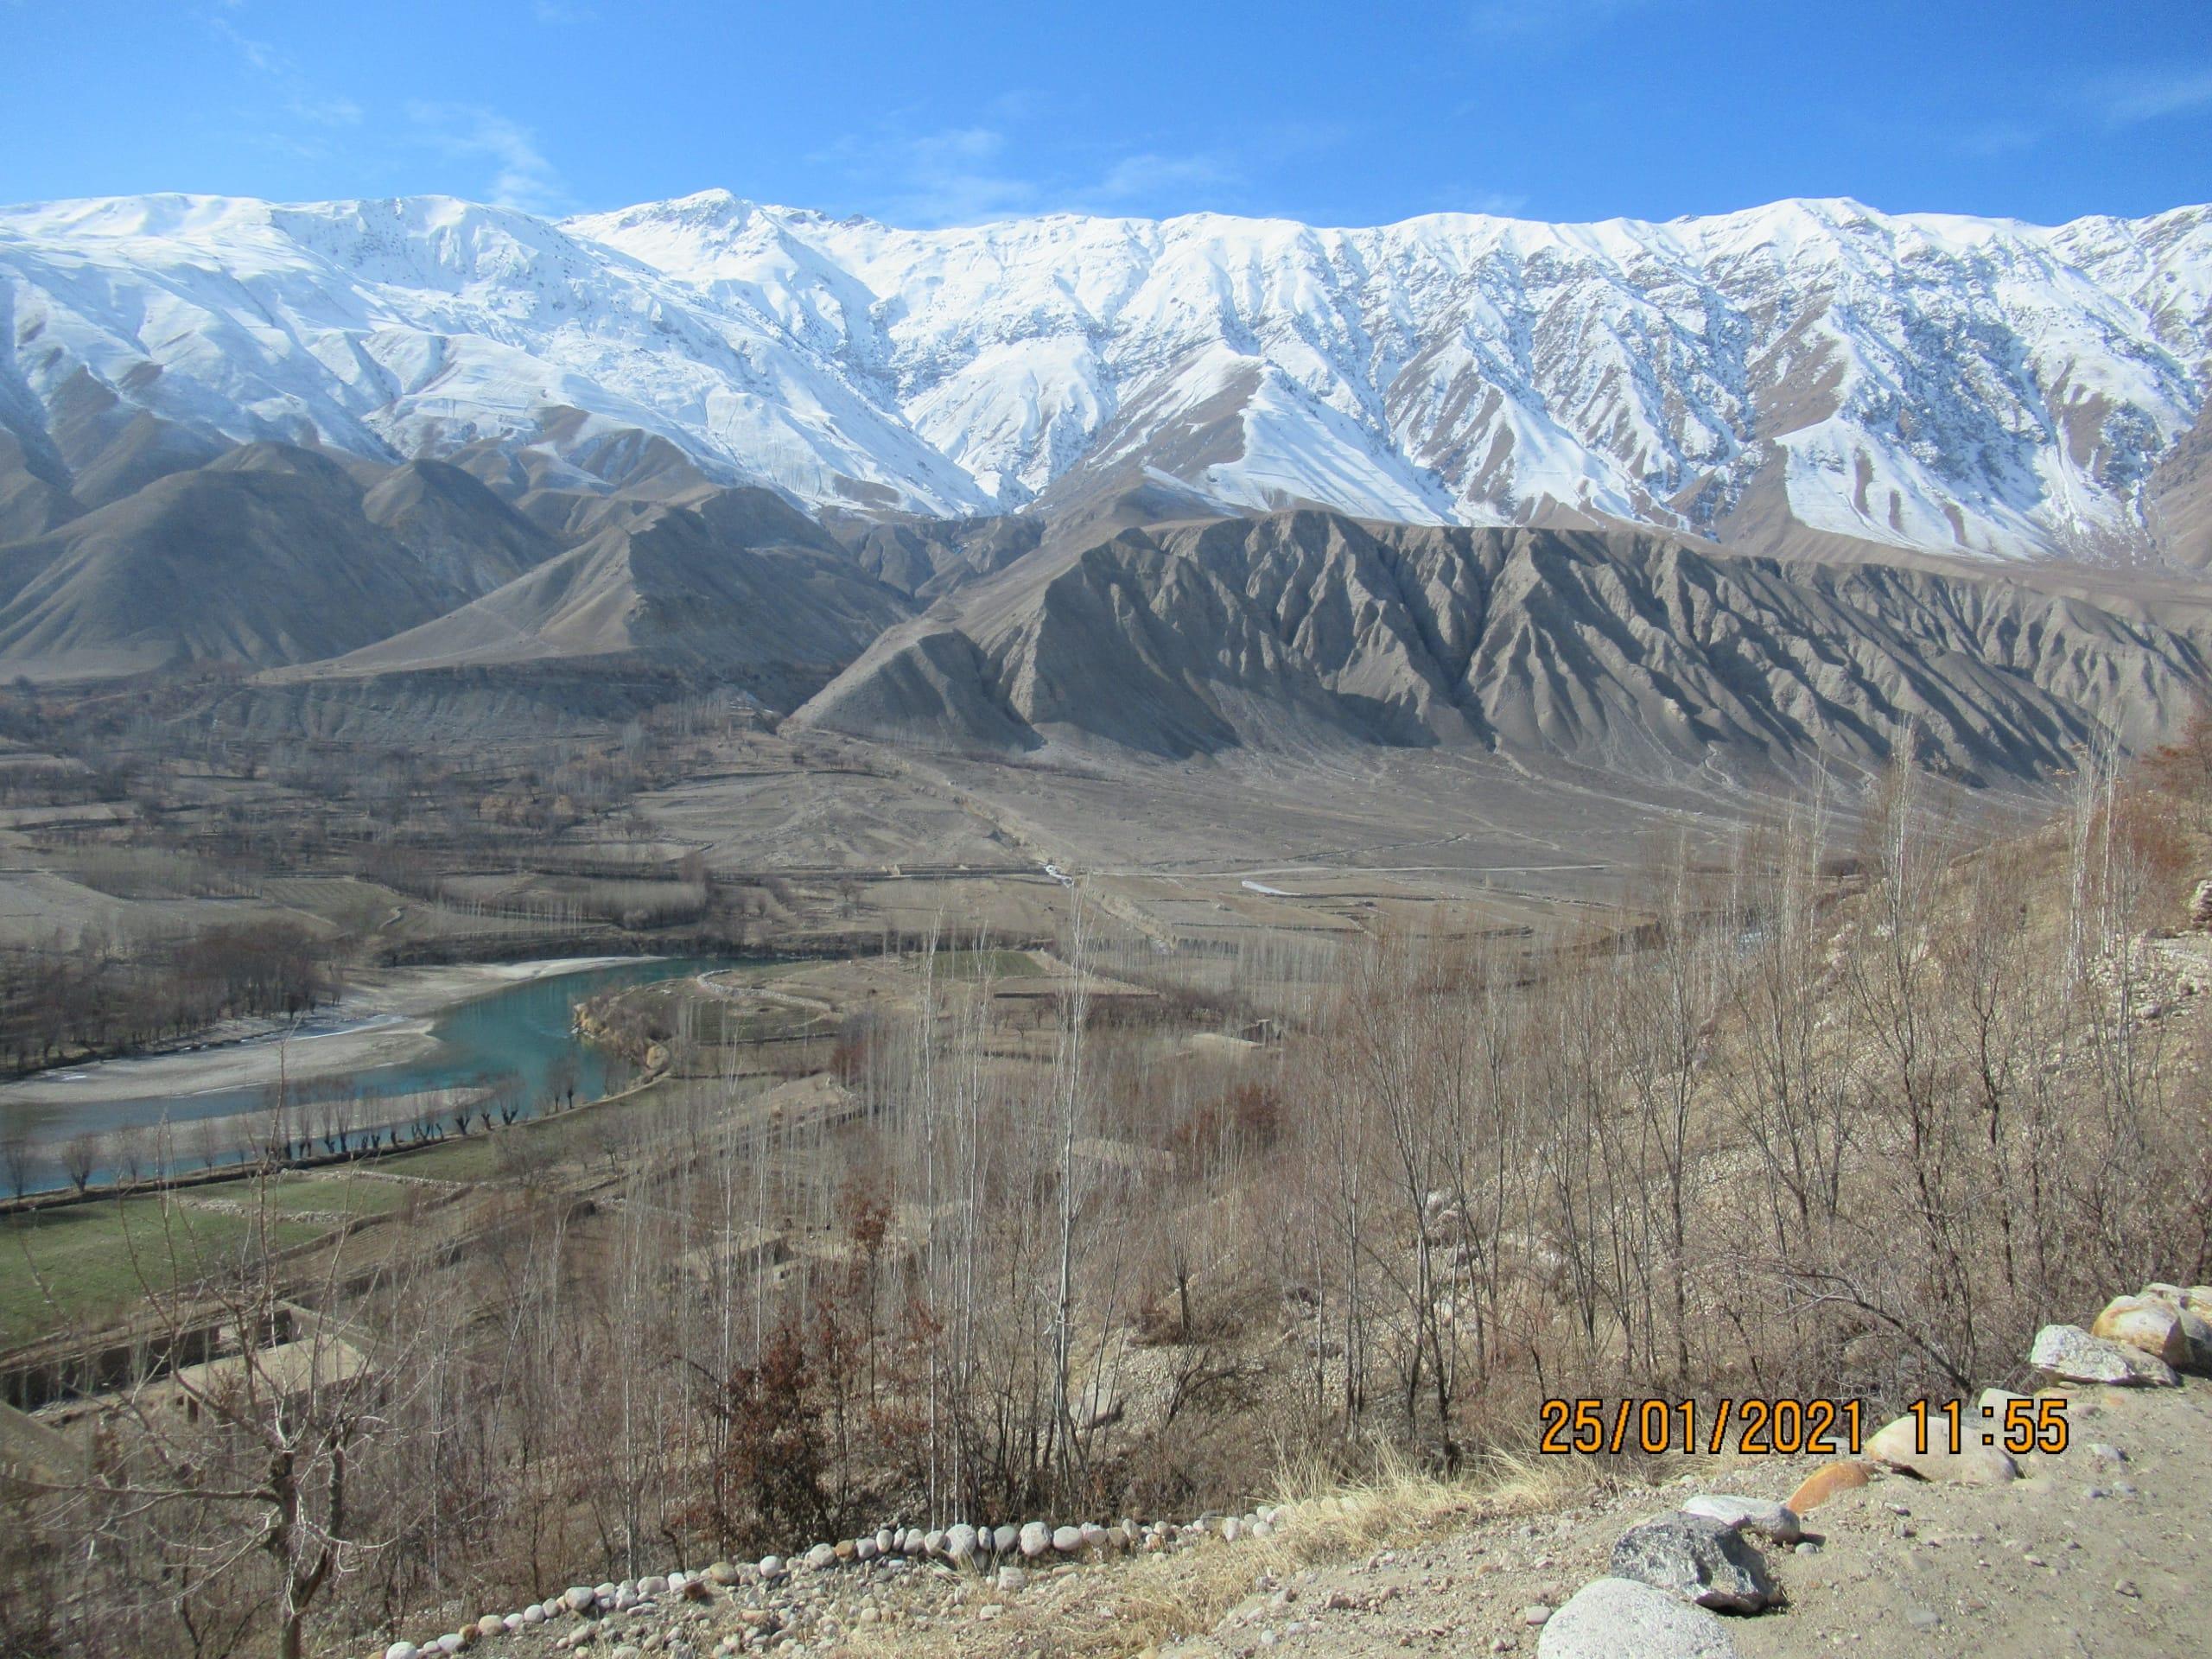 افغانستان زیبا و توپوگرافی ناهموار آن برای ساختن یک شبکه ملی مطمئن.